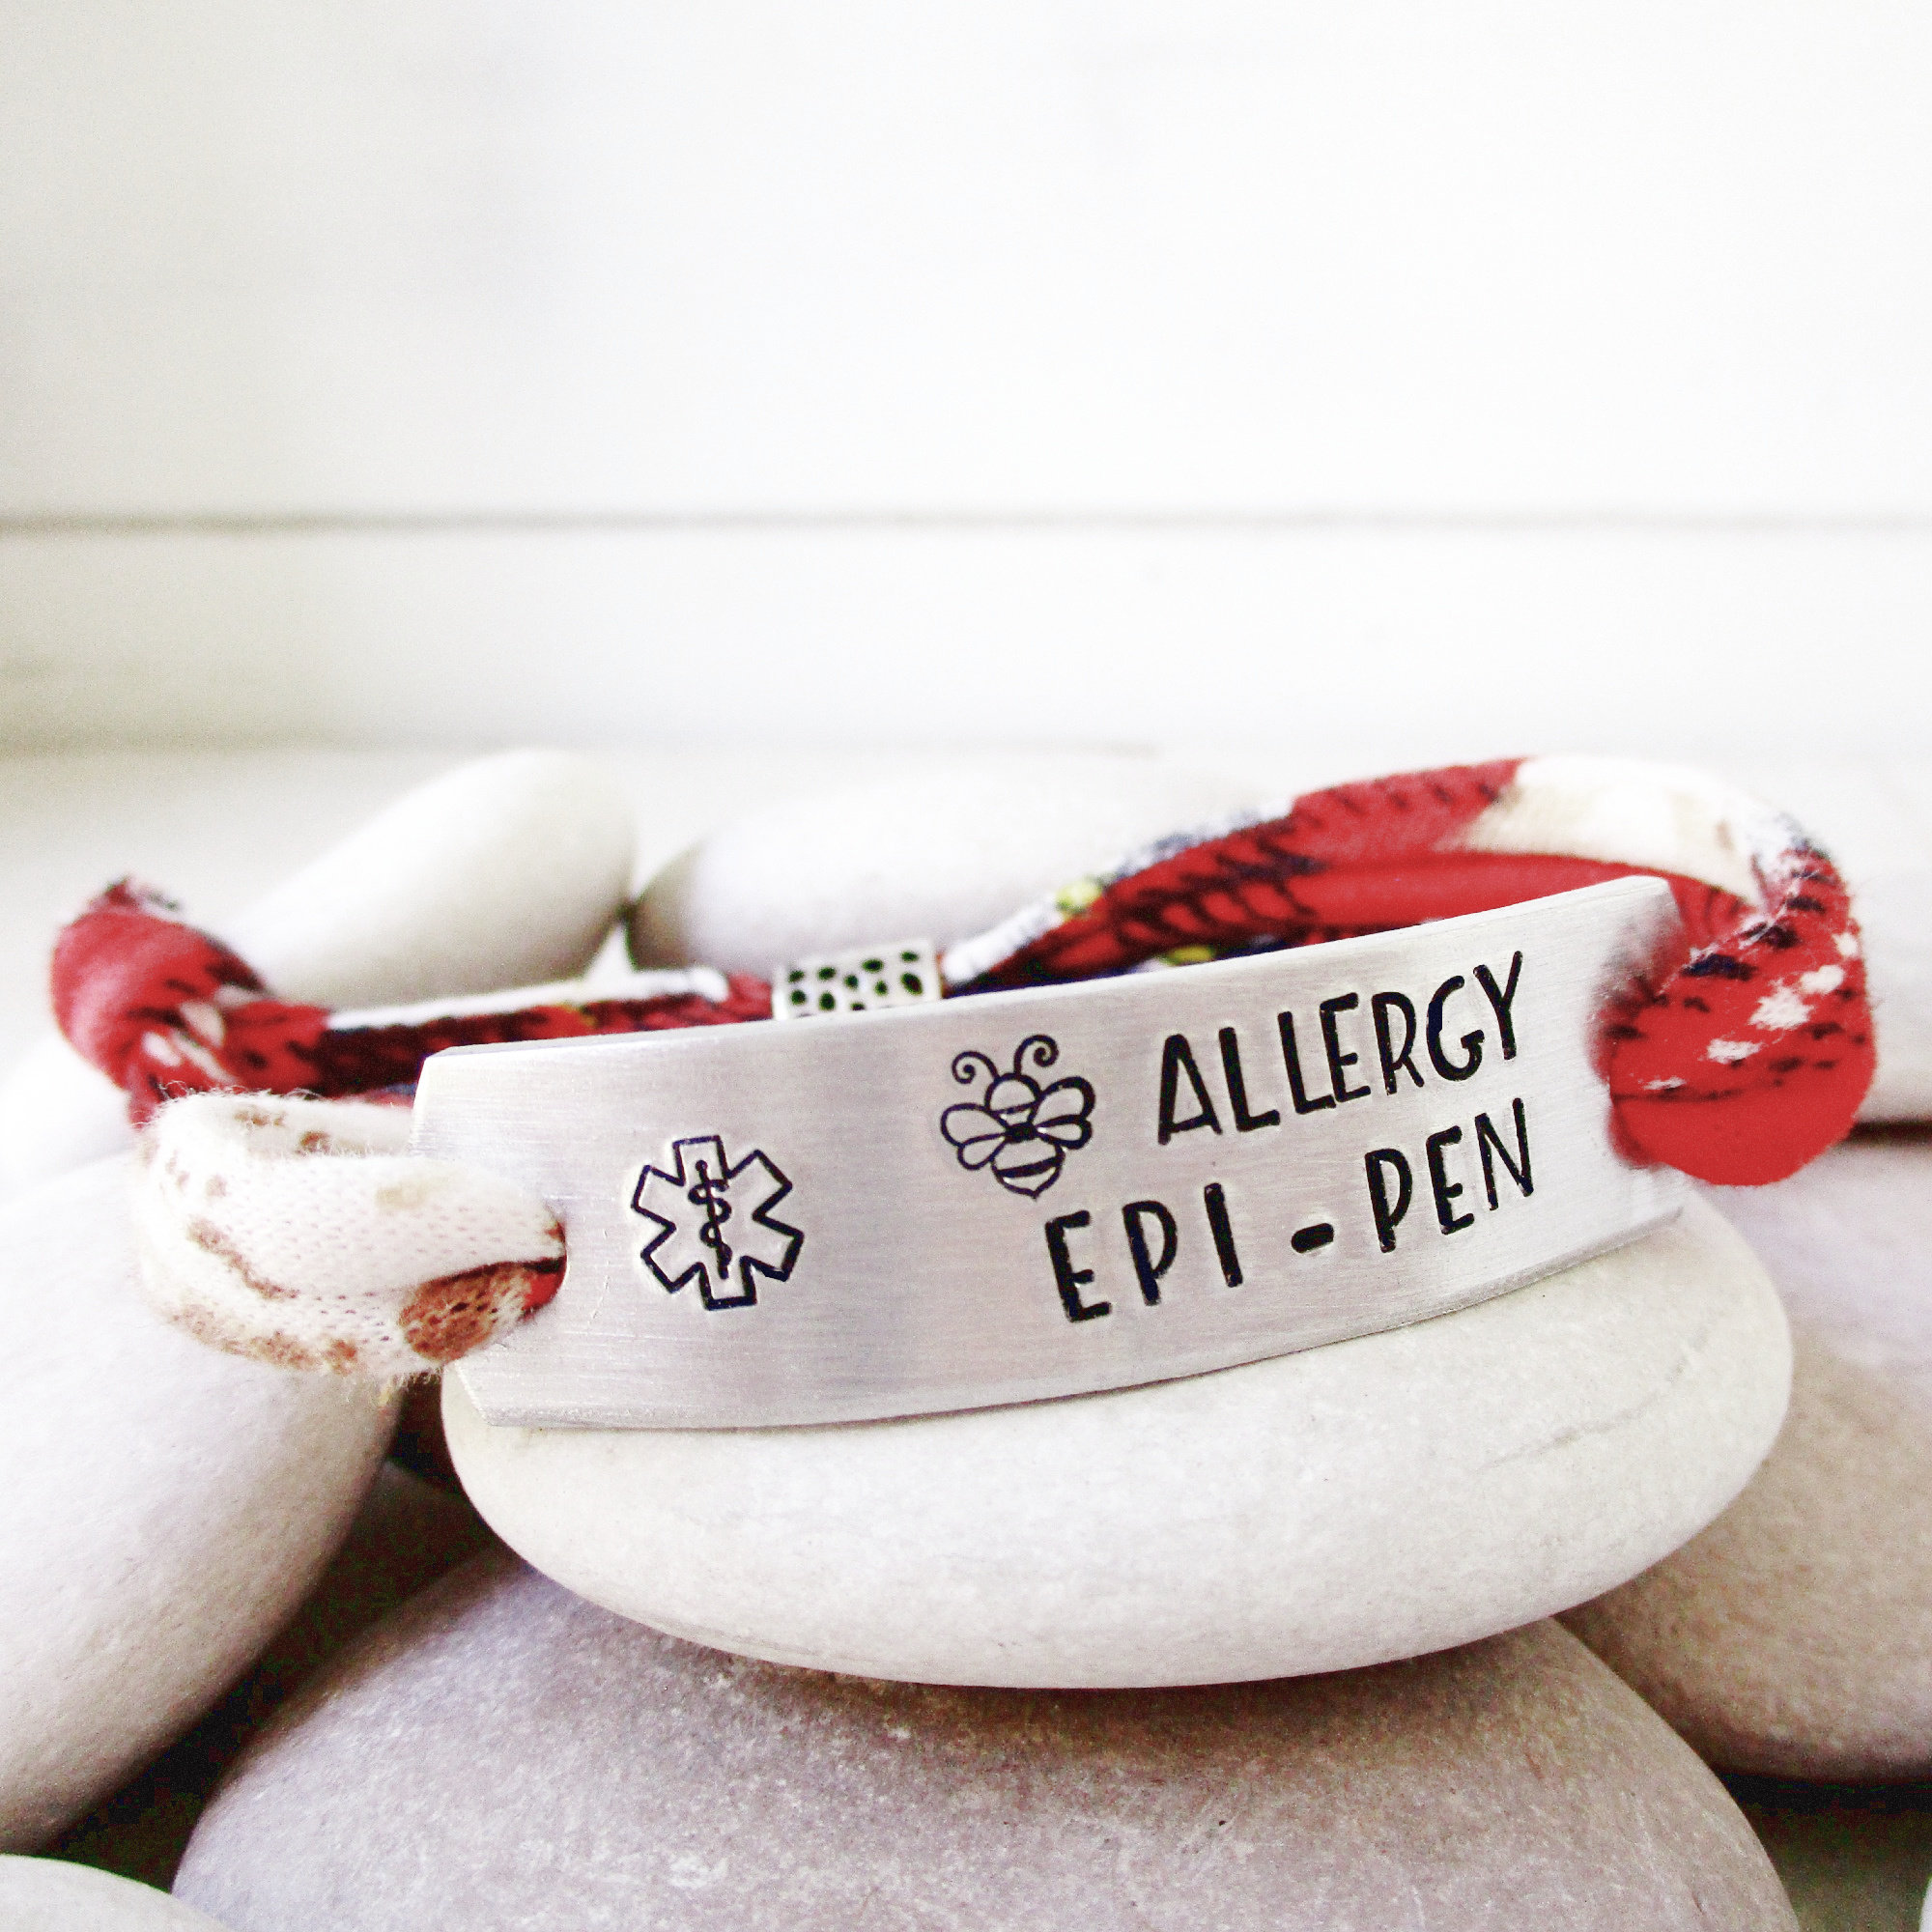 Allergy/medical Bracelet Design Phone No, Allergy Emergency Bracelet Fun  Design, Medical Alert ID Design,multiple Alerts With Design - Etsy